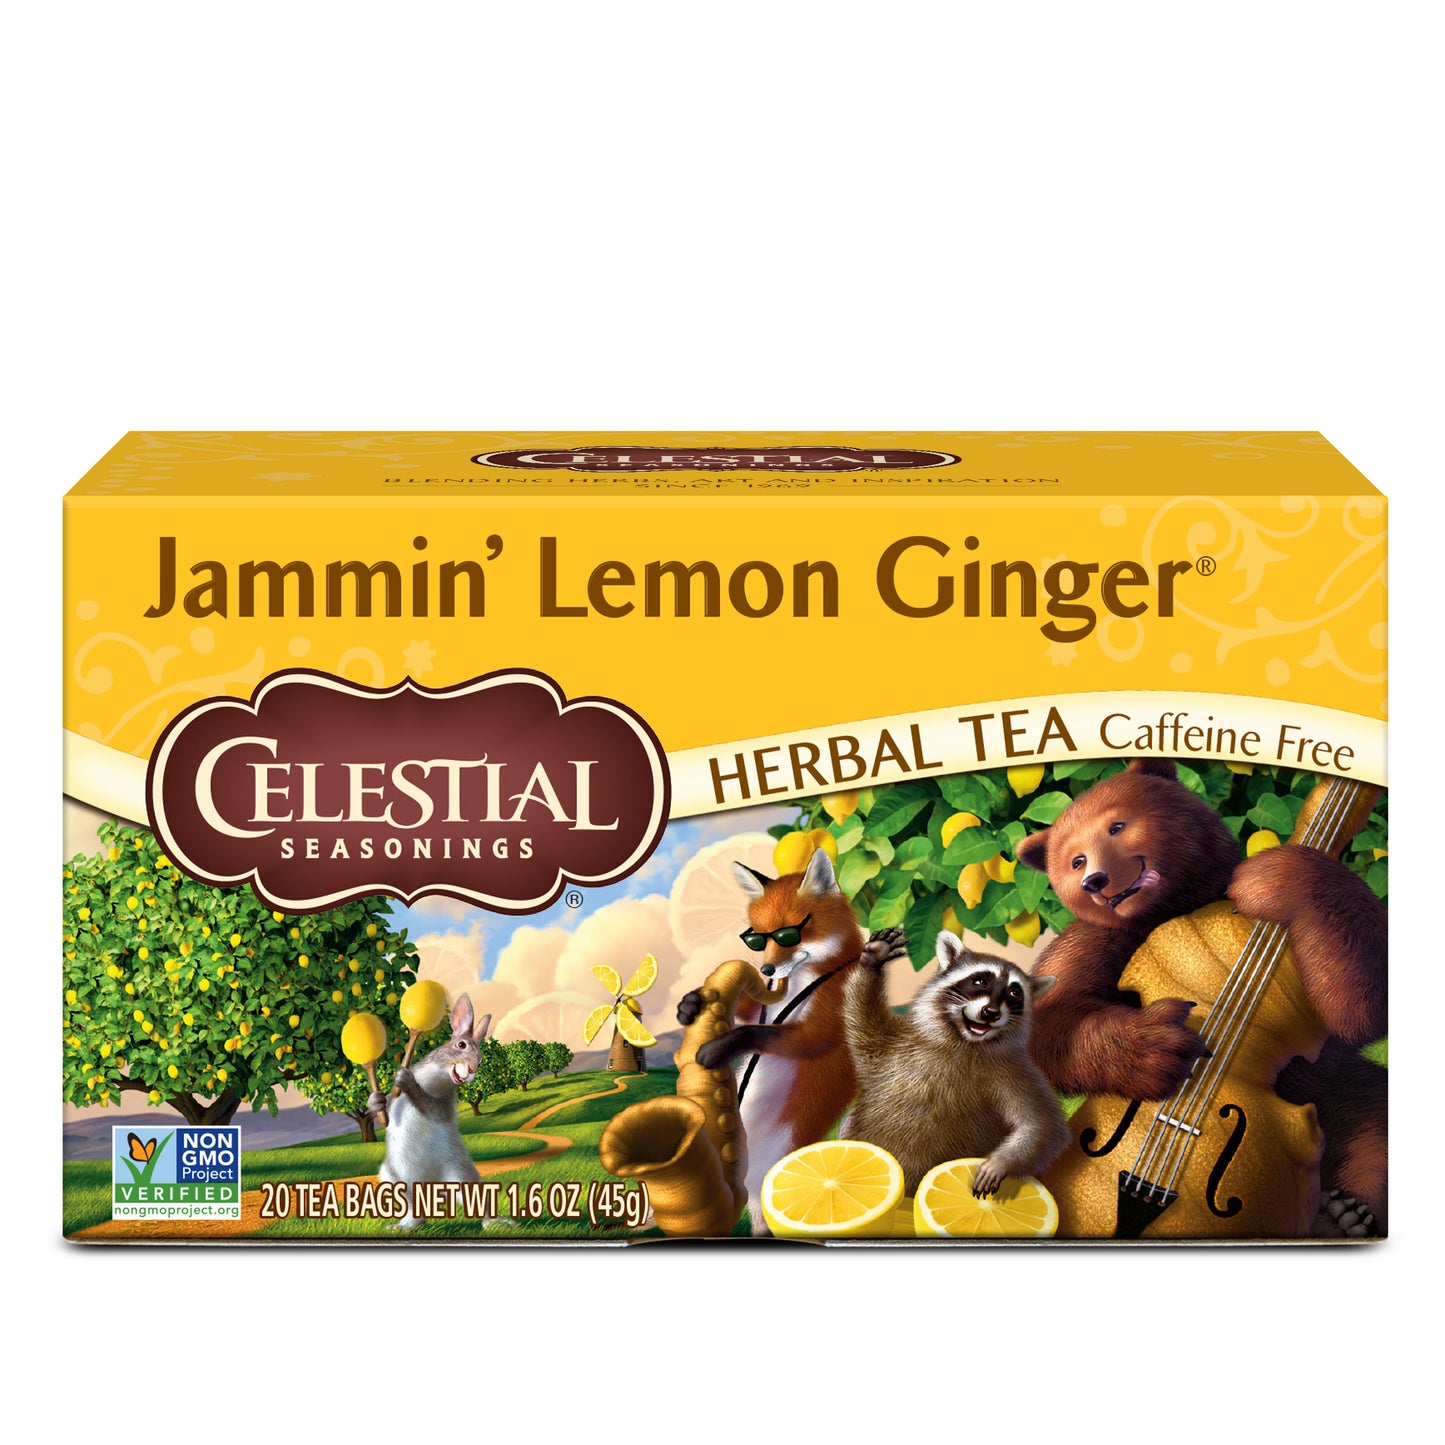 Celestial Seasonings Jammin' Lemon Ginger